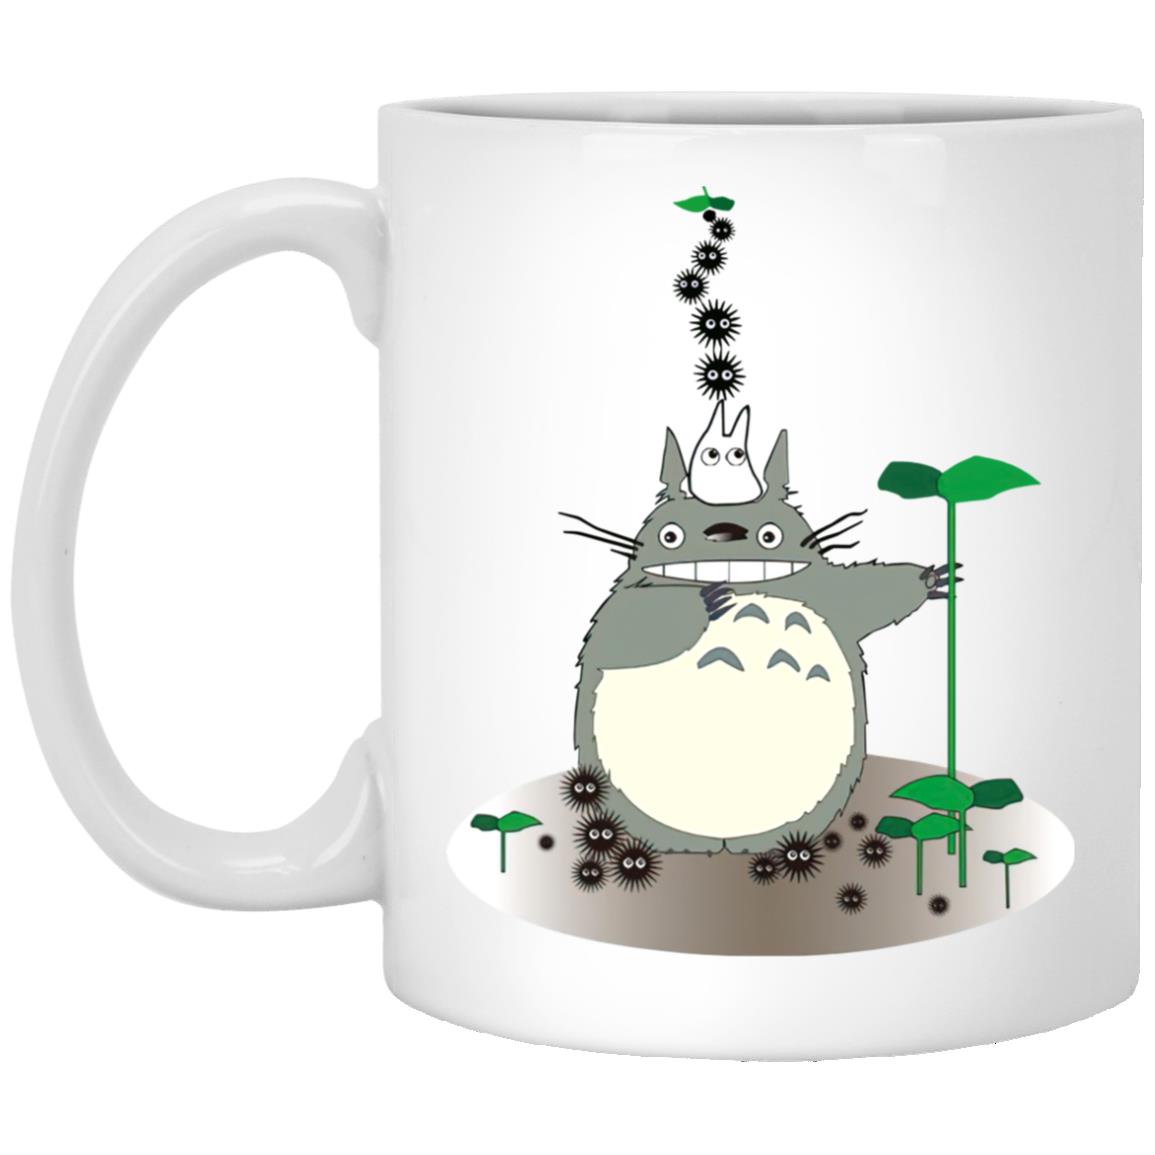 Totoro and the Sootballs Mug Ghibli Store ghibli.store